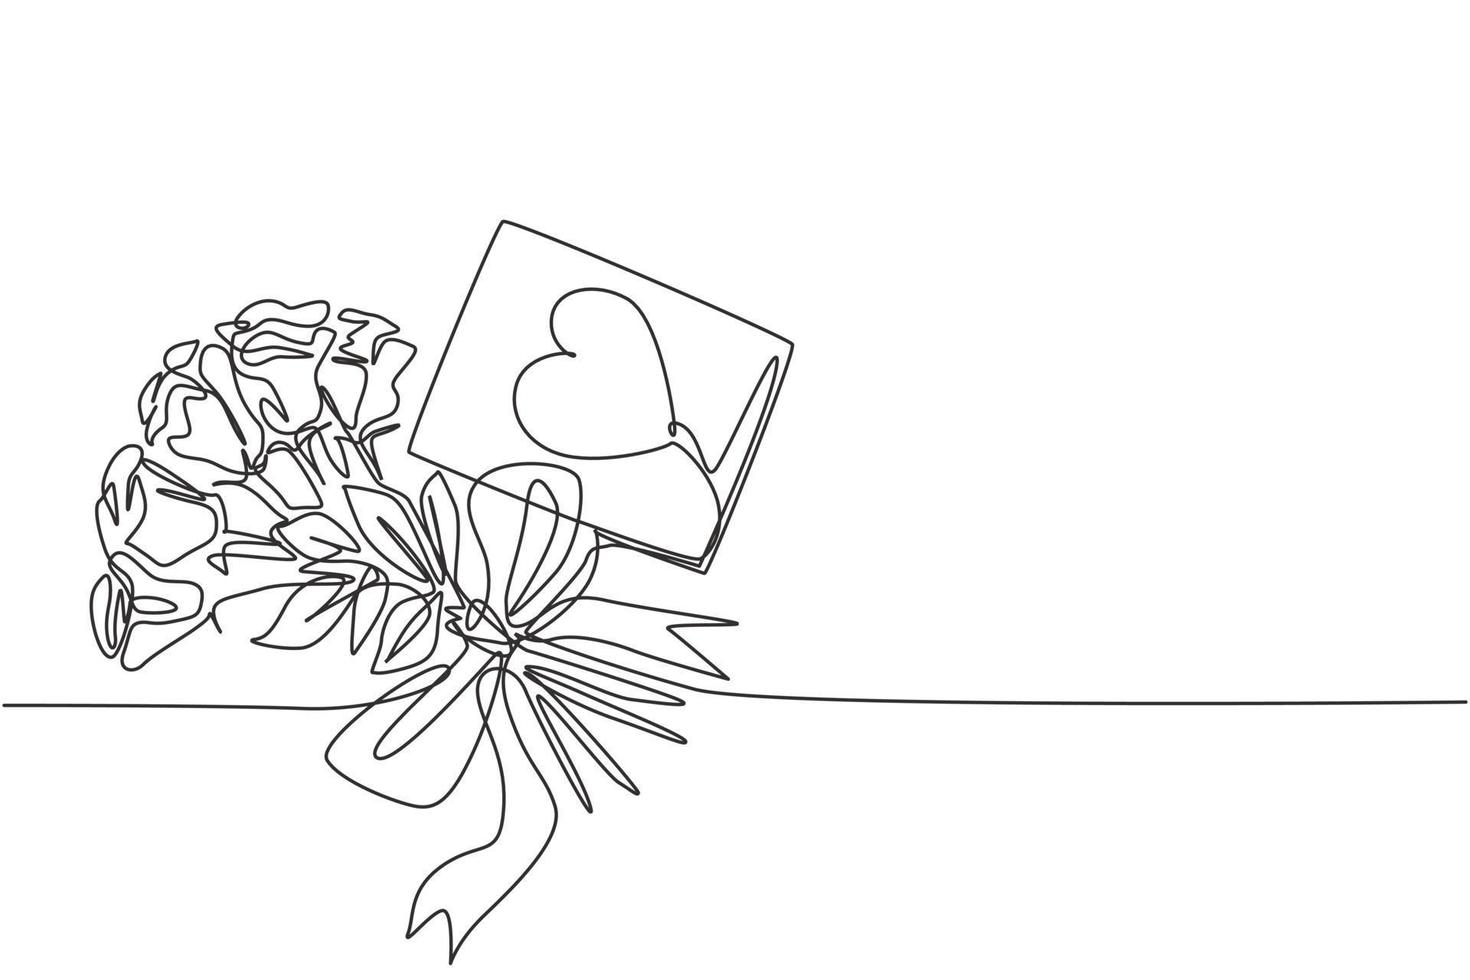 eine durchgehende strichzeichnung von frischer, schöner romantischer rosenblume mit liebesgrußkarte. moderne Einladung, Logo, Banner, Plakatkonzept Single-Line-Draw-Design-Vektorgrafik-Illustration vektor